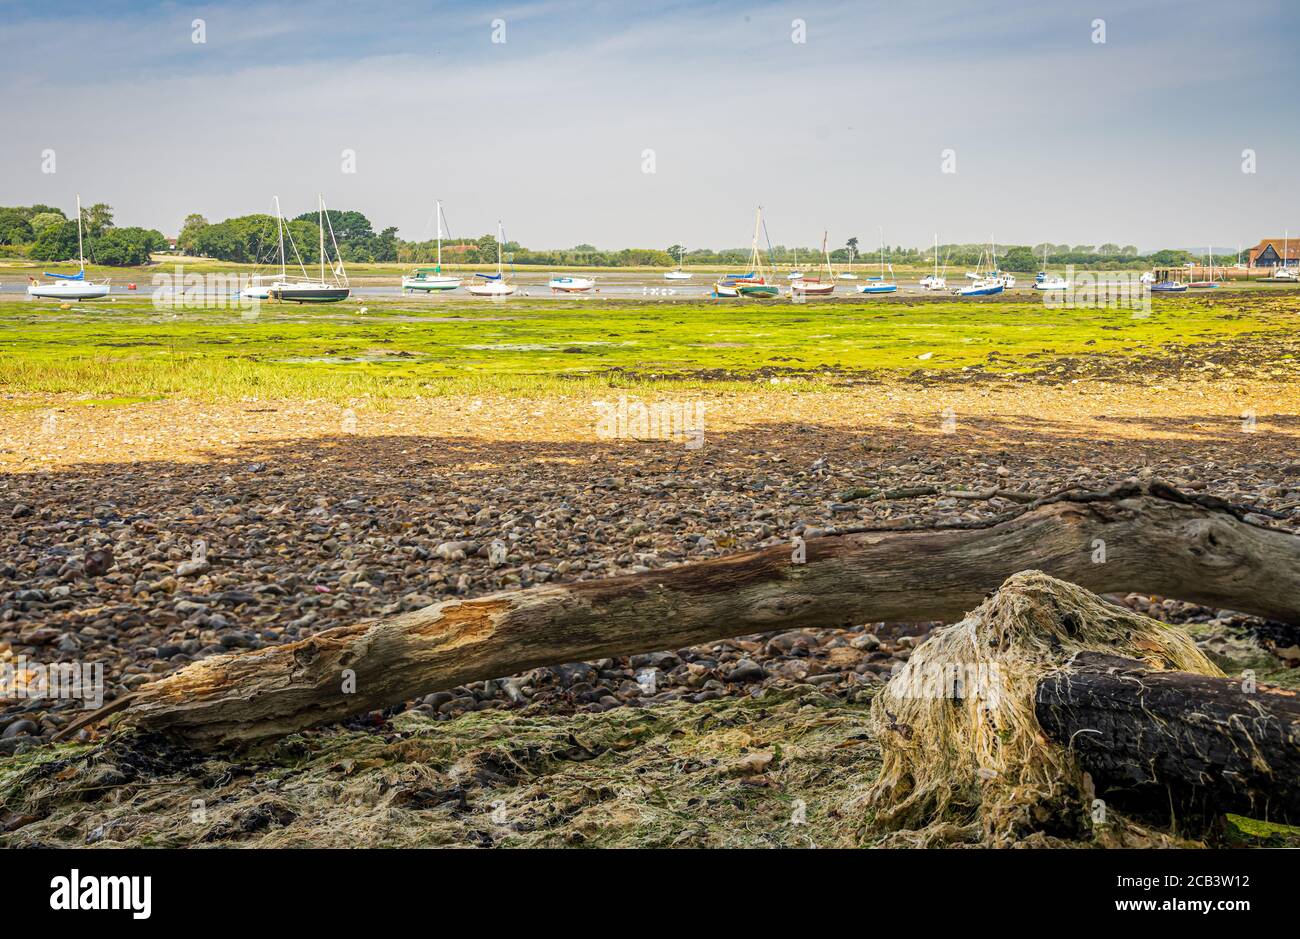 Tronco d'albero su mudflats a bassa marea con barche a vela in distanza Foto Stock